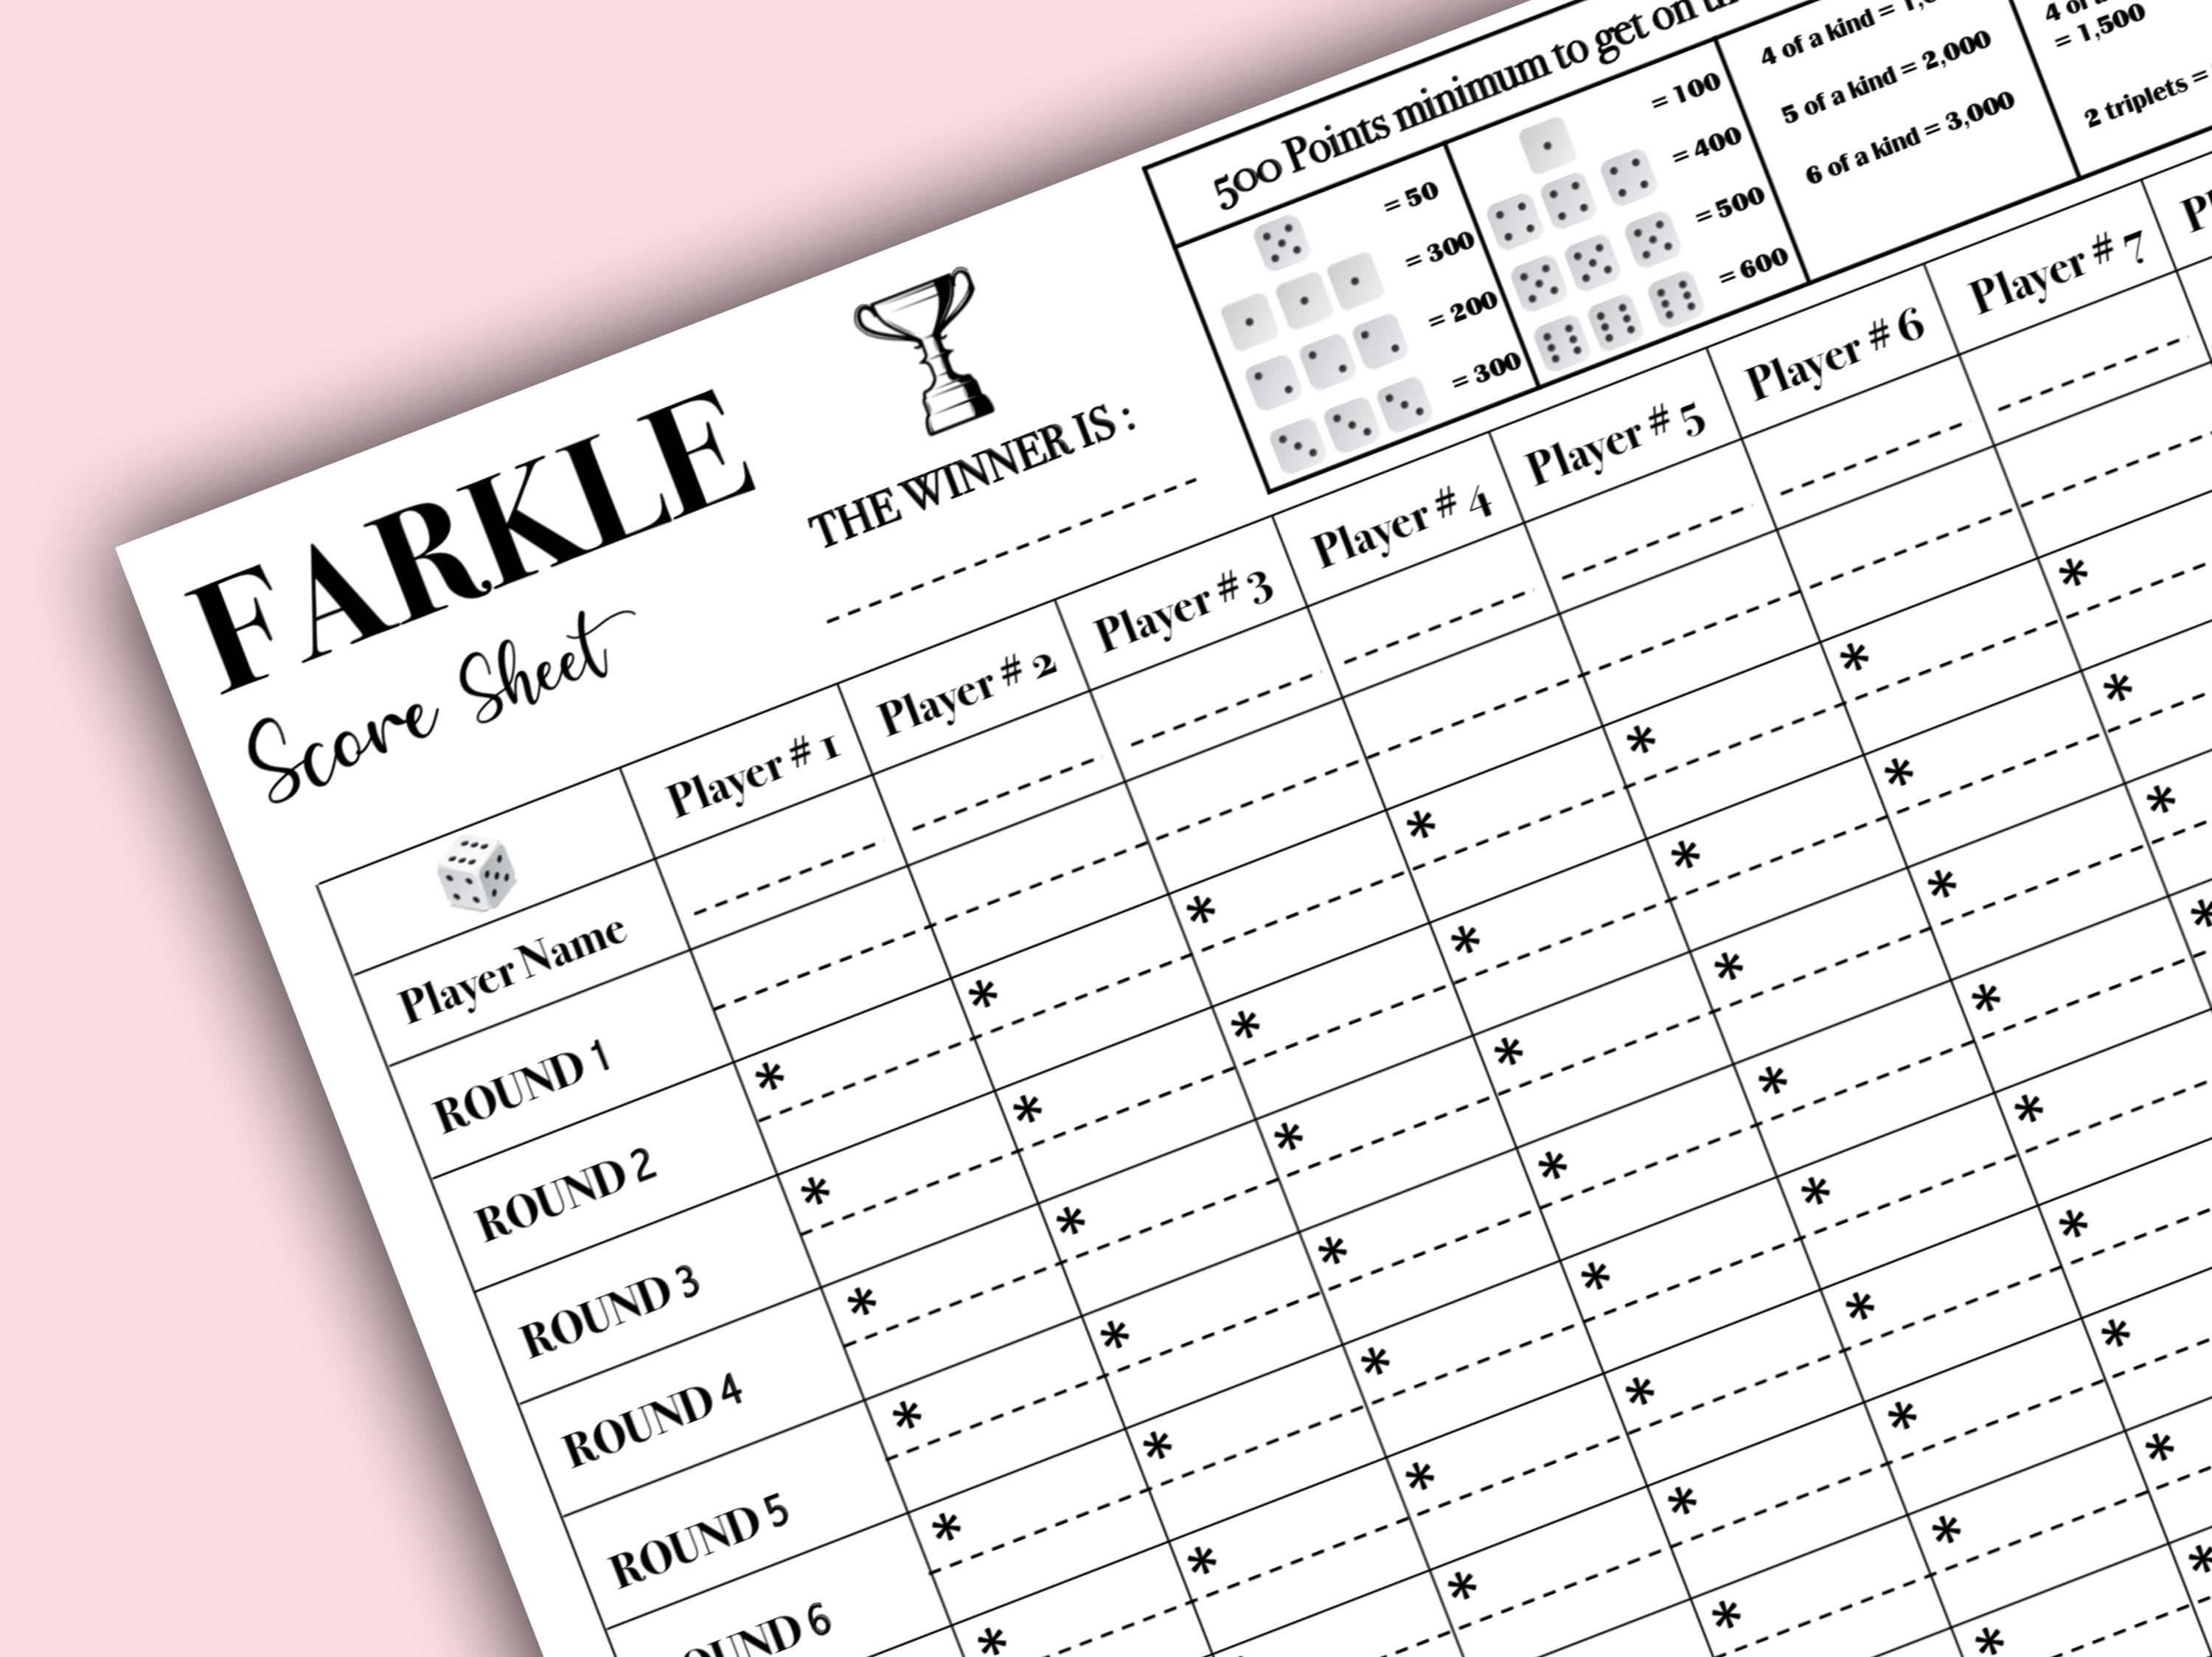 Yahtzee Score Card Print Ready File Yahtzee Scoresheet Yahtzee Score Pads  Printable Ready File PDF Download 8.5x11 -  Sweden